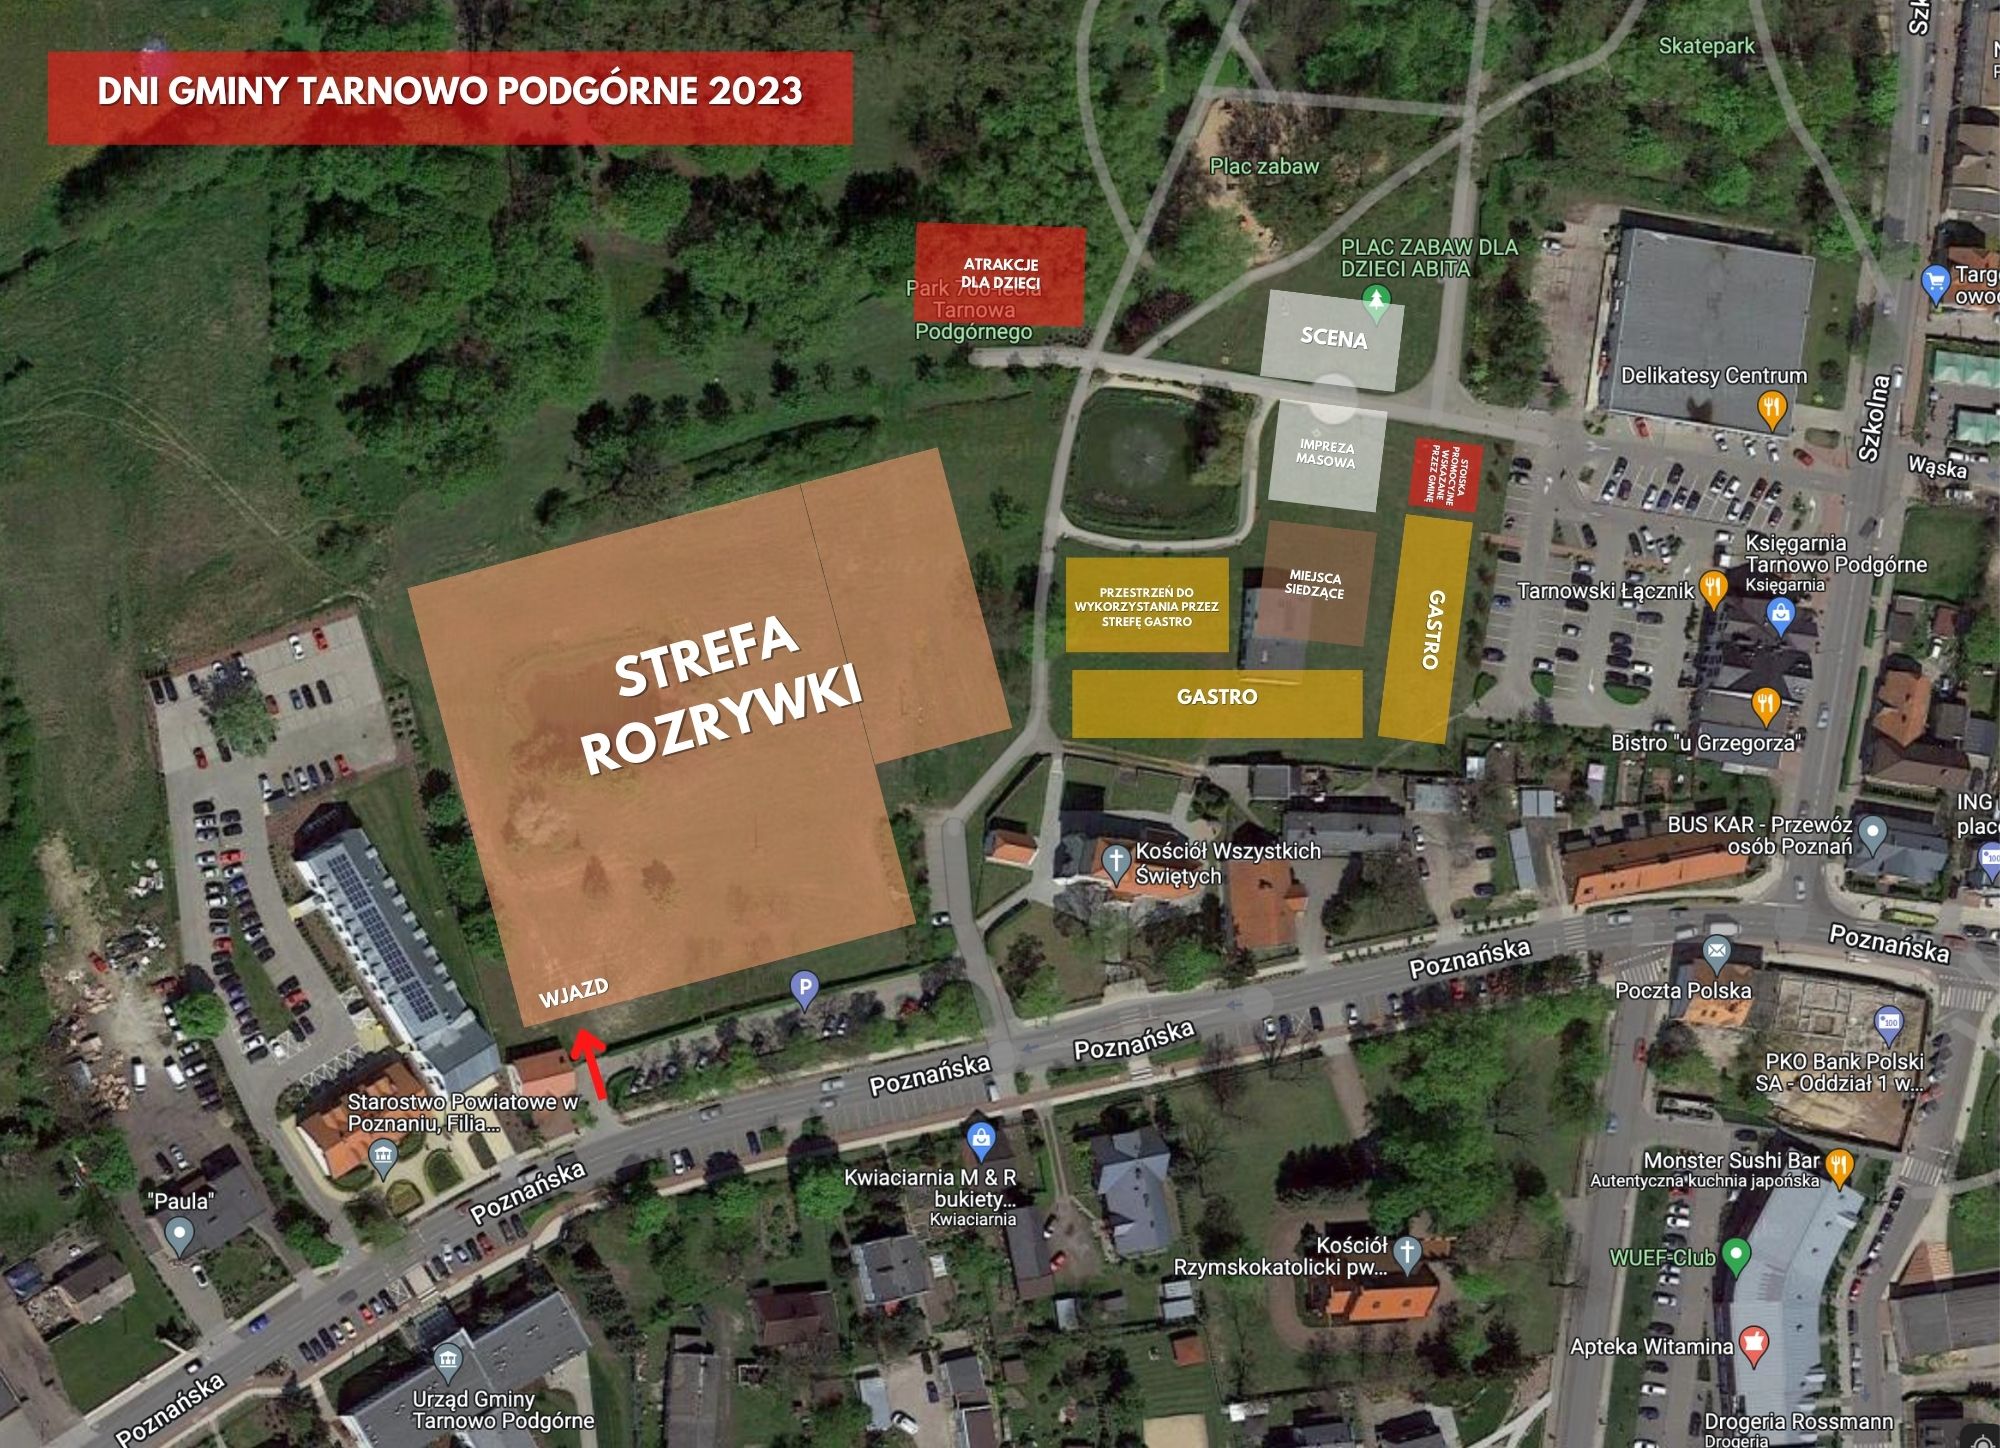 Mapa miasteczka festynowego Dni Gminy Tarnowo Podgórne 2023